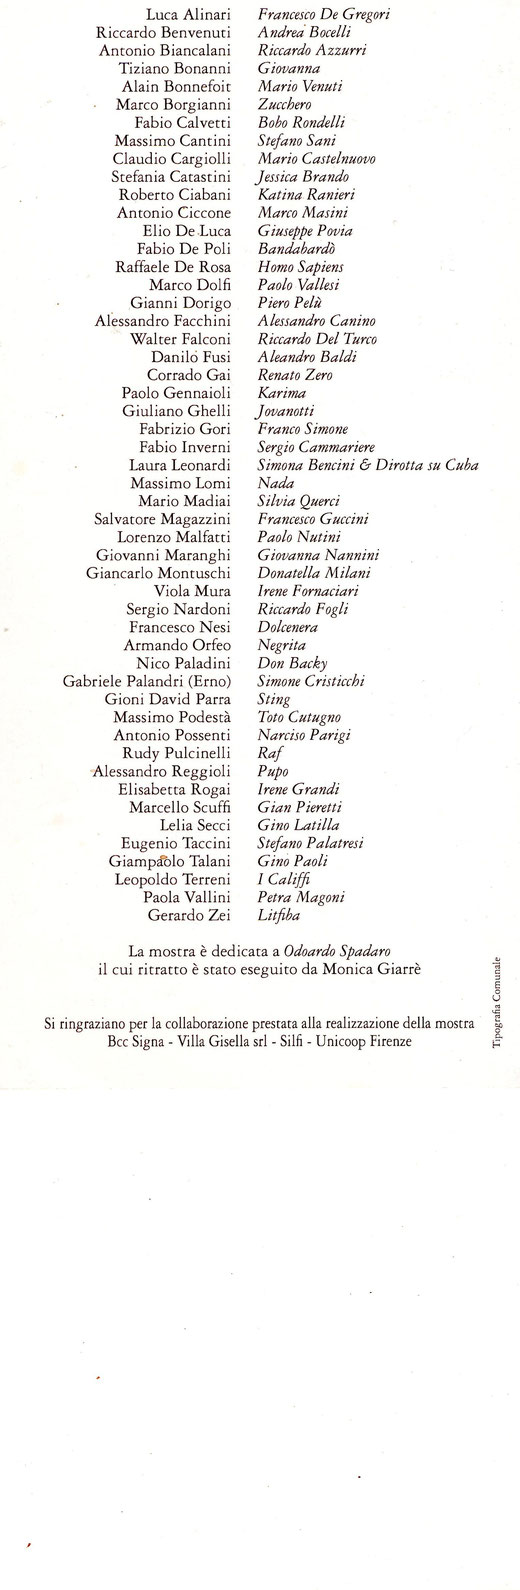 50 PITTORI TOSCANI per 50 CANTANTI TOSCANI. Mostra curata da Fabrizio Borghini, Filippo Lotti e Nicola Nuti